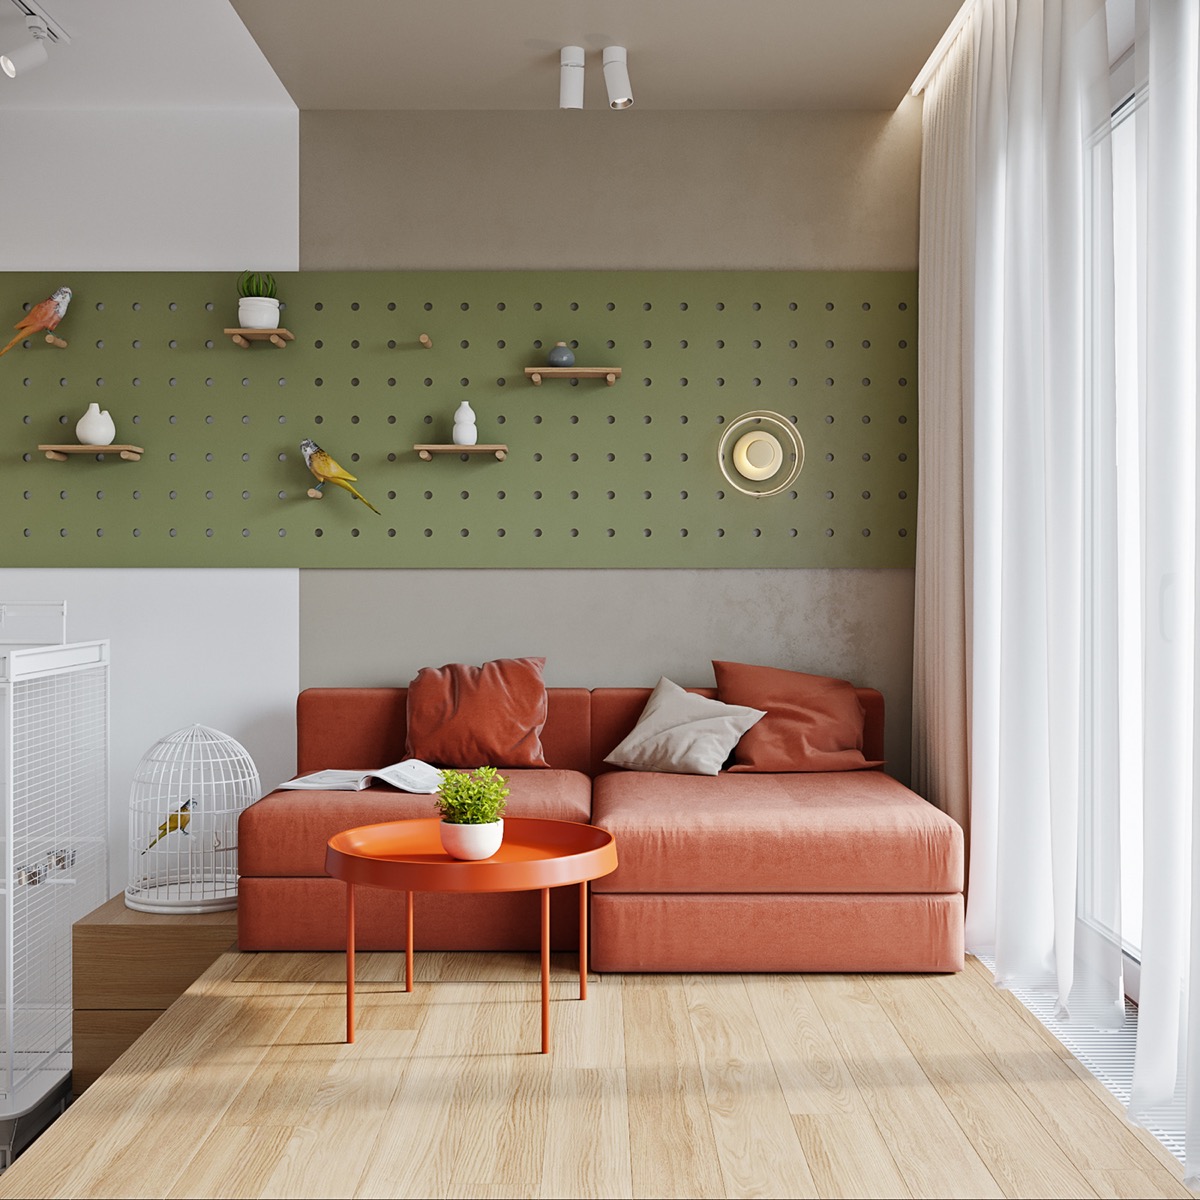 hình ảnh phòng khách căn hộ 46m2 được đóng khung bởi bộ ghế sofa màu cam đất, bàn trà tròn nhỏ xinh cùng tông và những điểm nhấn trang trí tinh tế như chậu cây mini, lồng chim